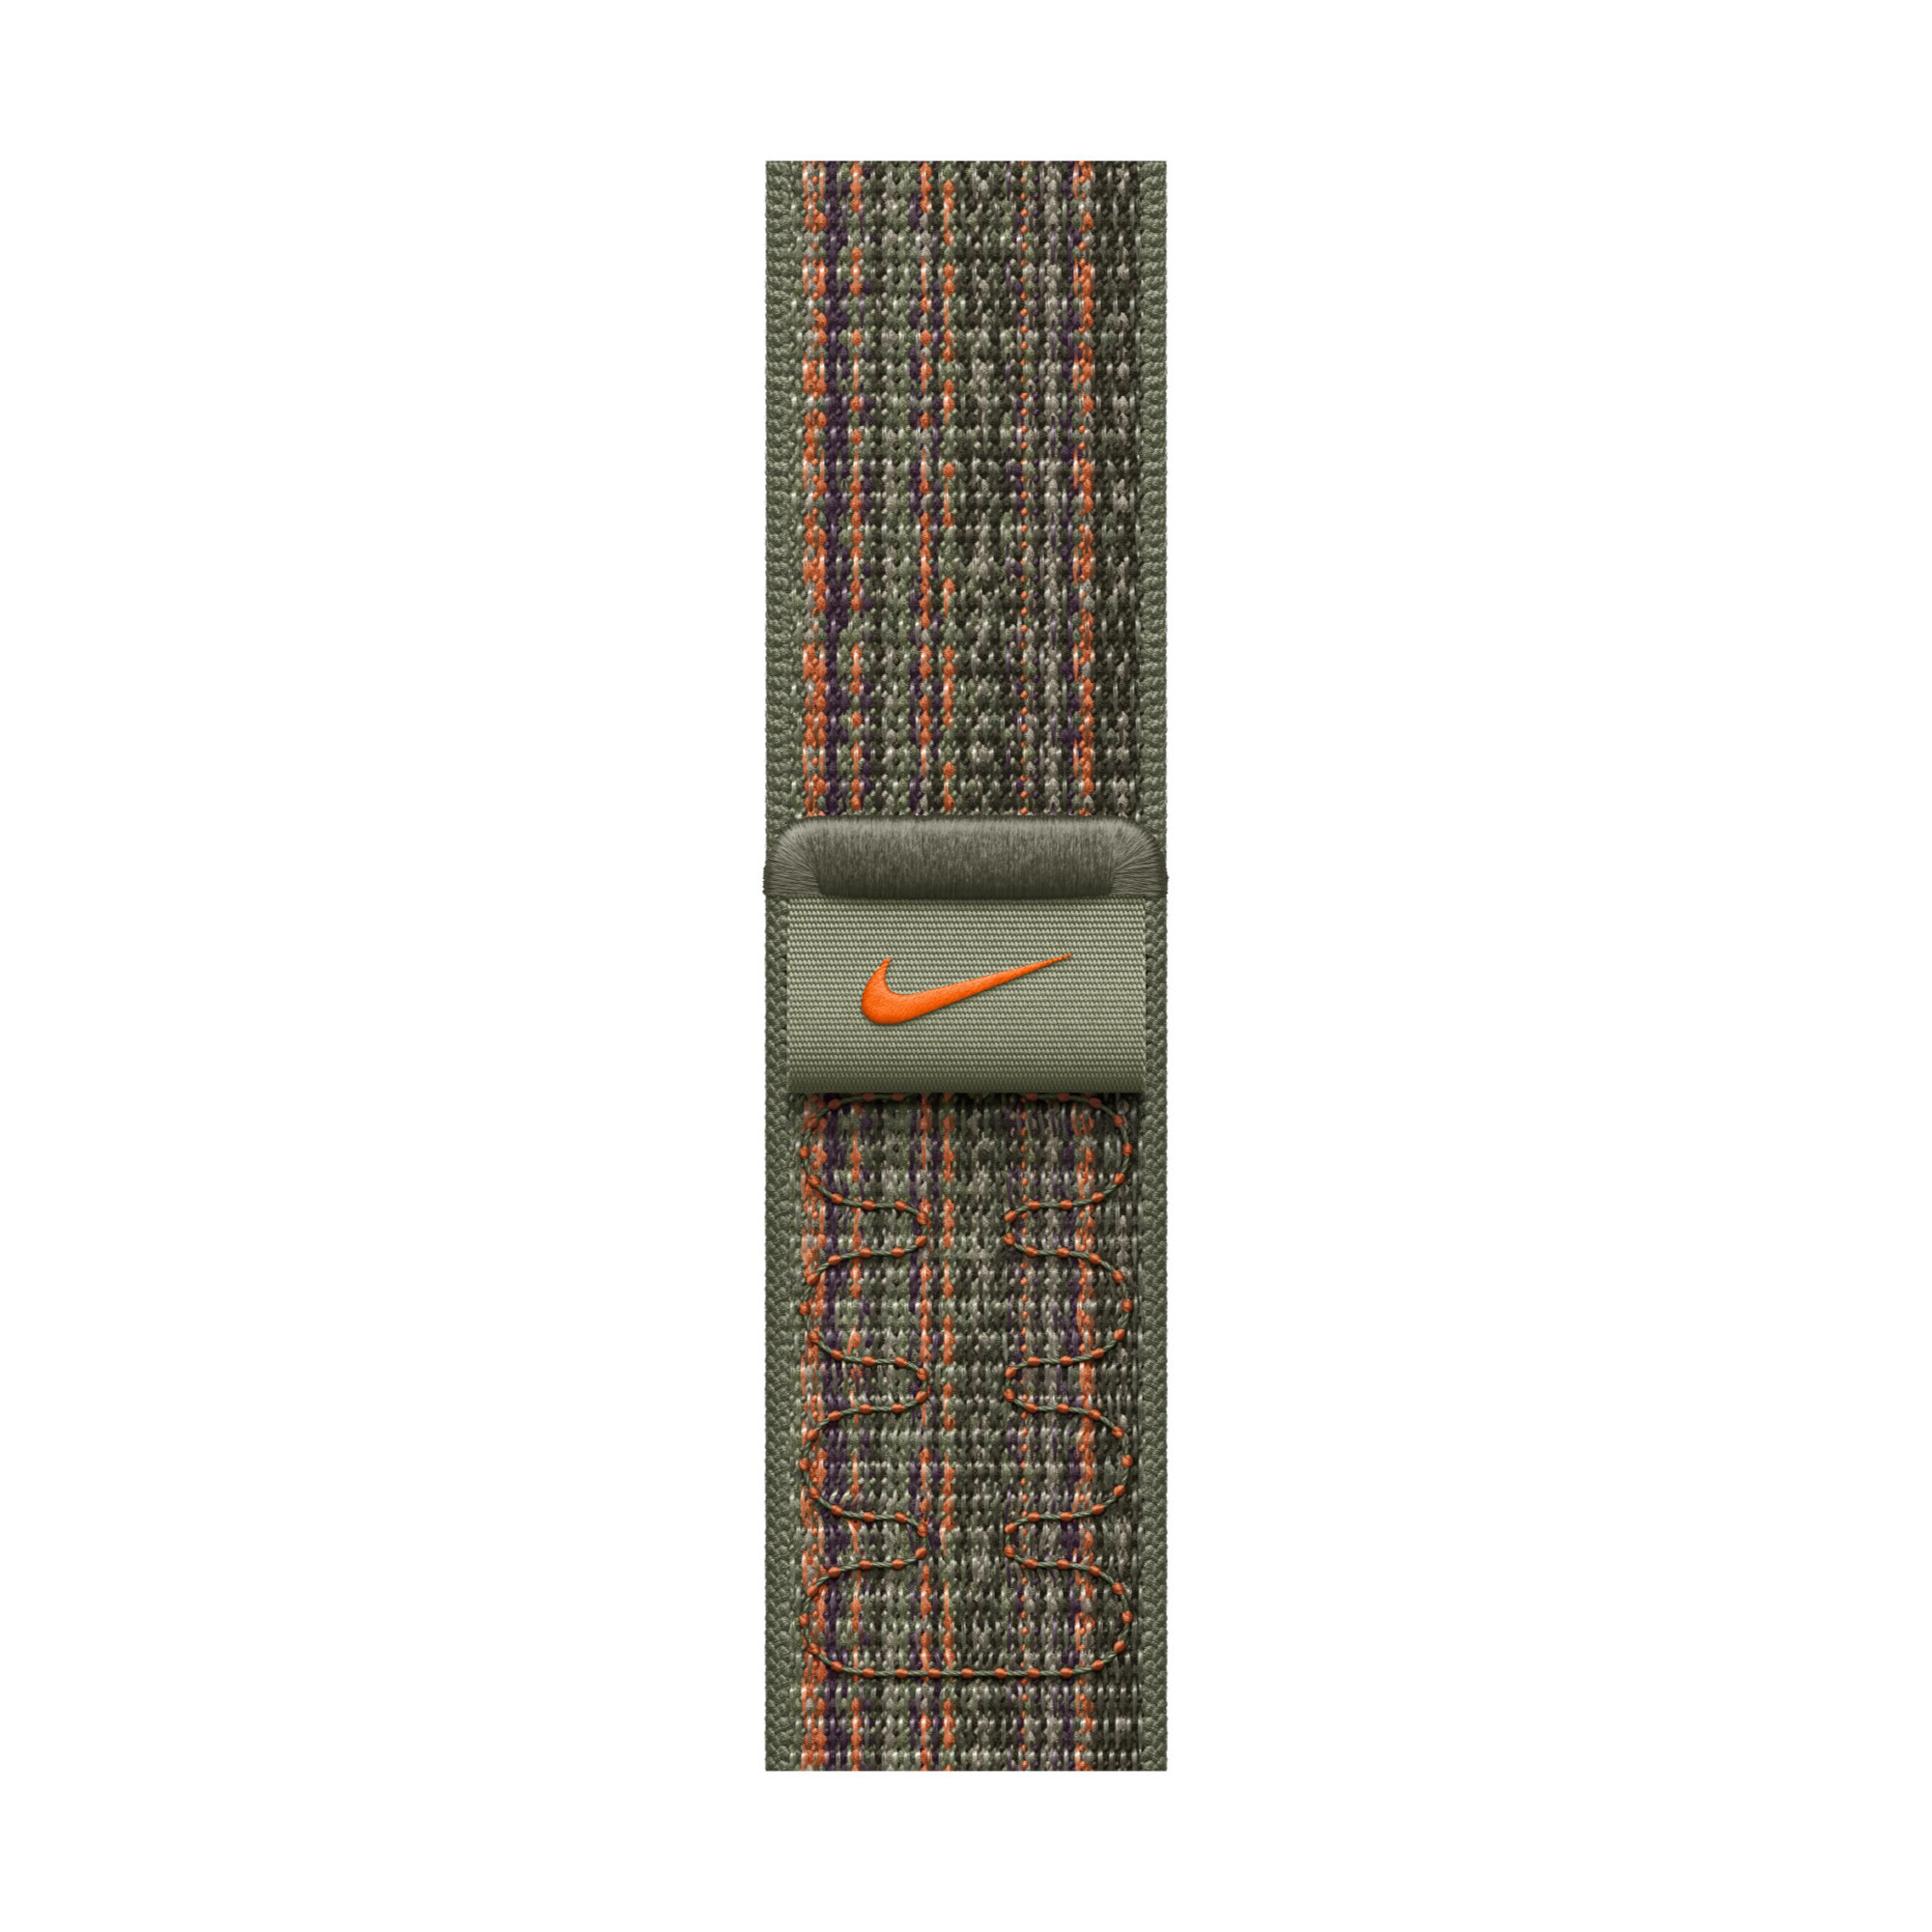 APPLE Watch 45mm-es Nike sportpánt - sötét mamutfenyőzöld-narancs